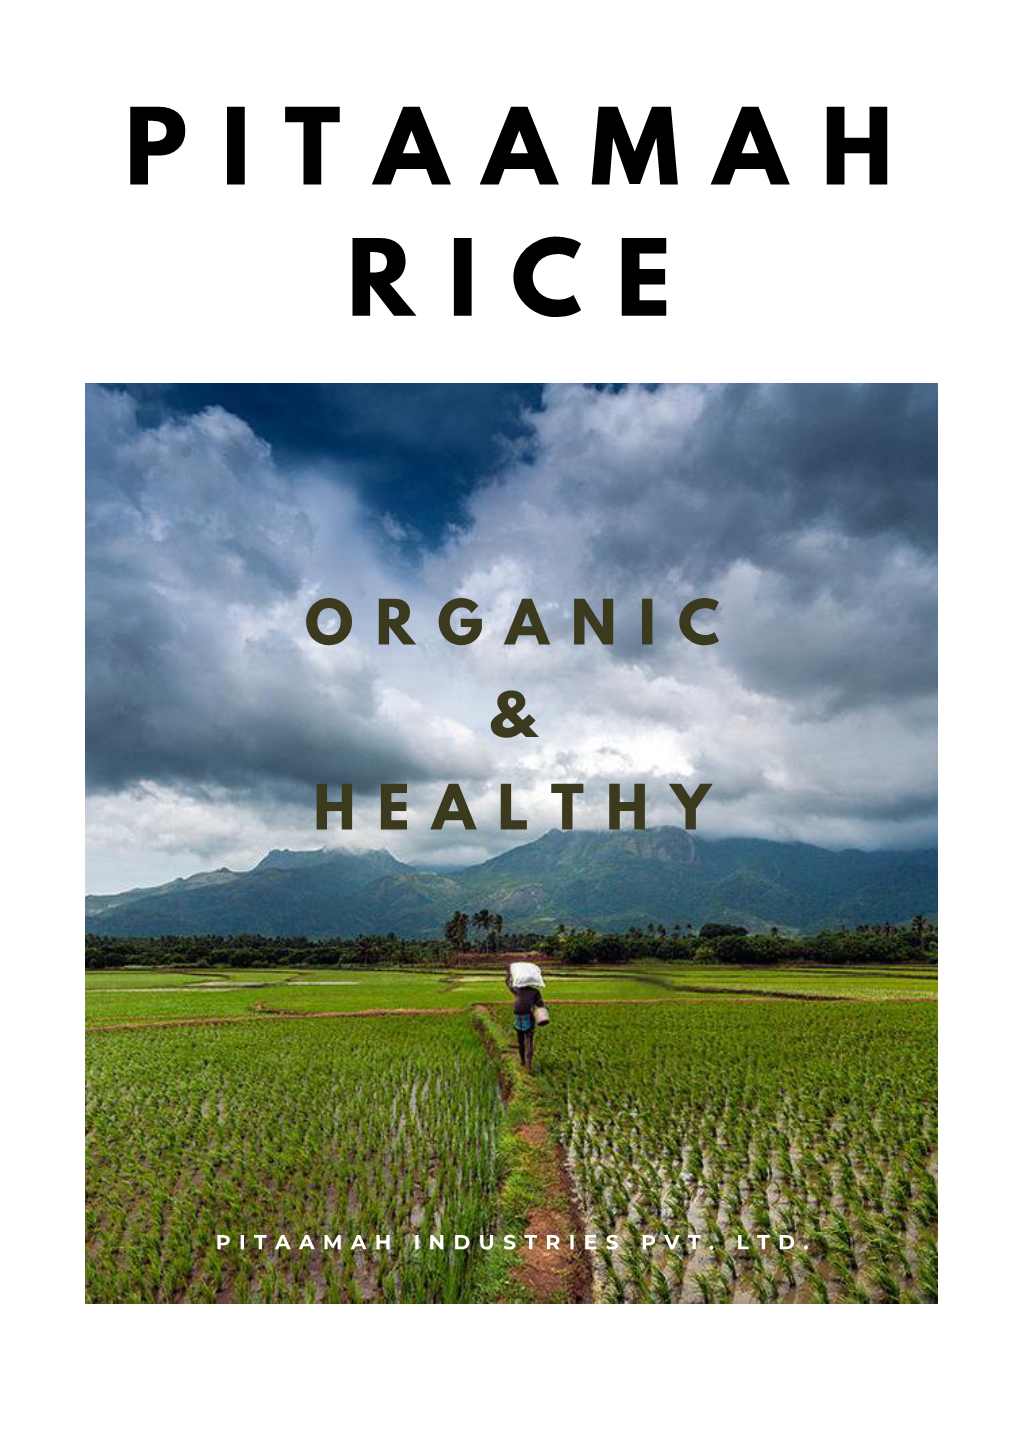 Pitaamah Rice Brochure